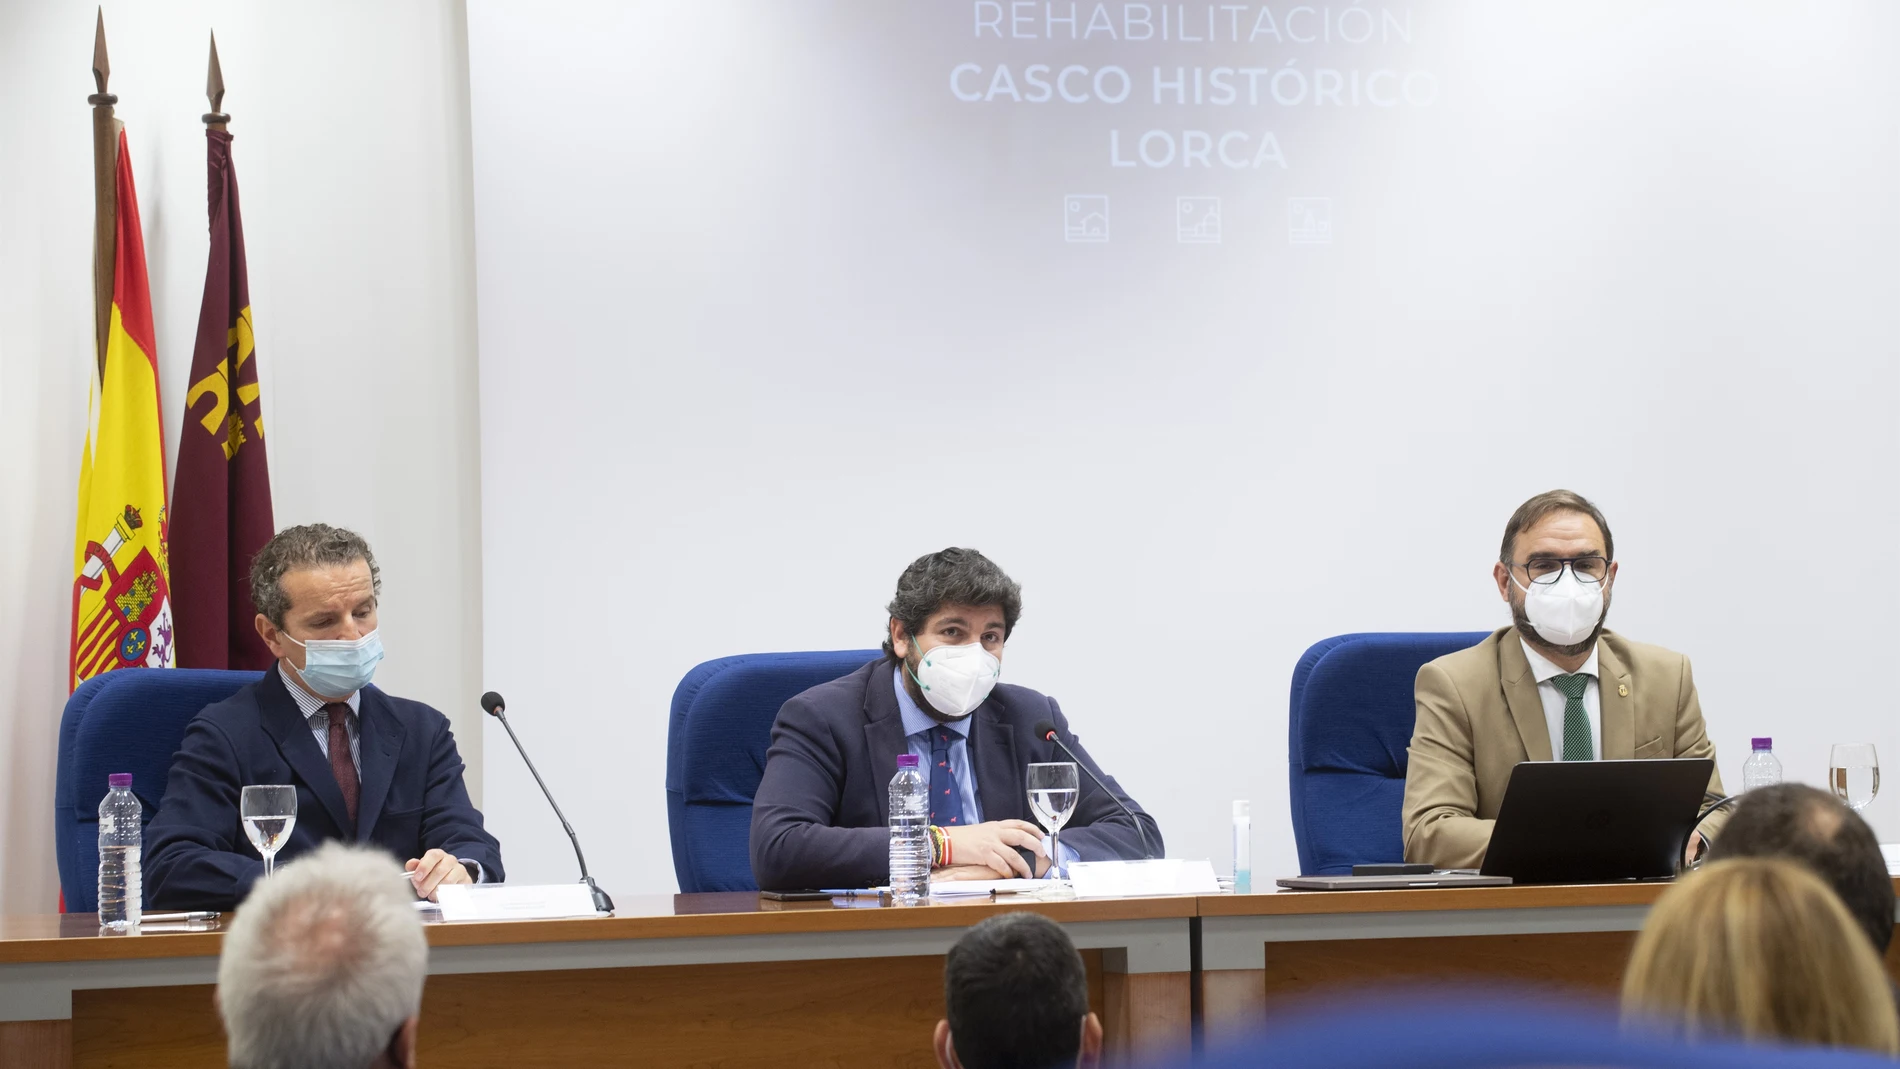 El jefe del Ejecutivo regional preside la reunión de la Comisión de Seguimiento para la gestión del proyecto de Interés Regional del Casco Histórico de Lorca